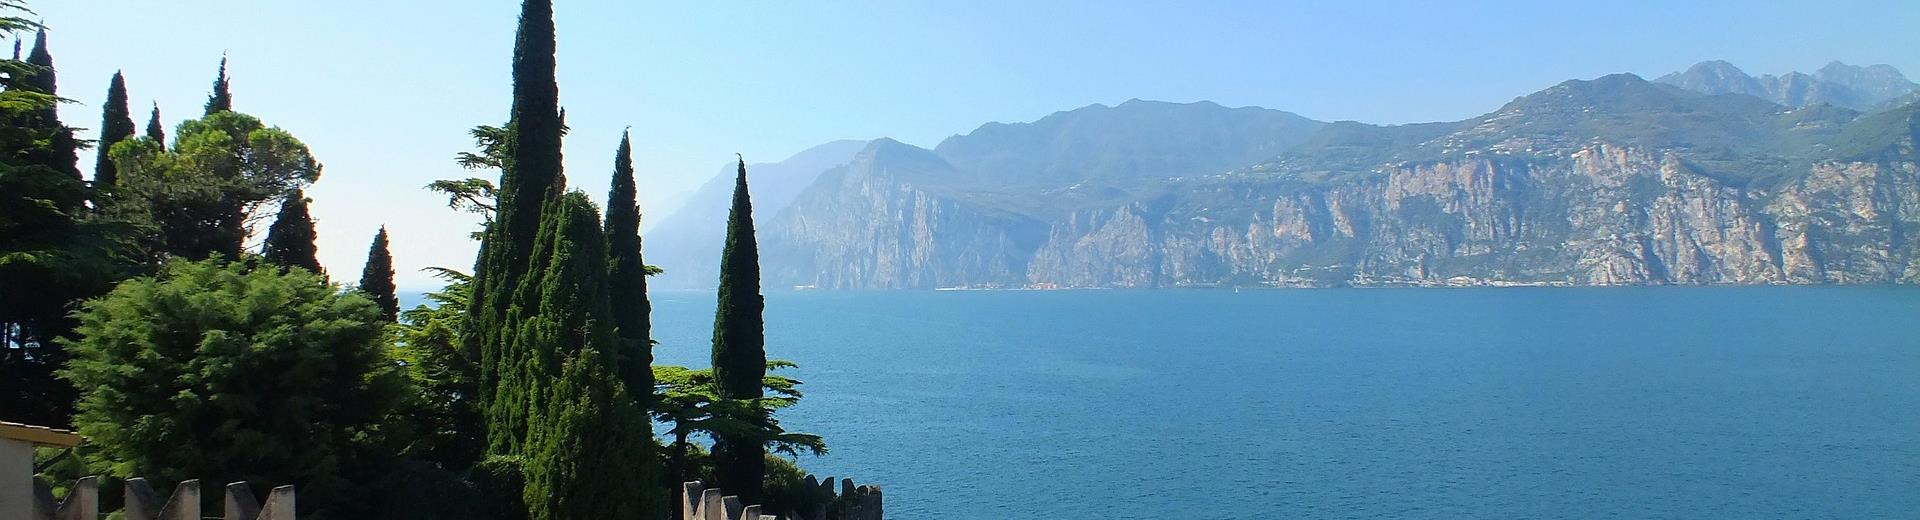 Best Western Hotel Turismo, vicino il Lago di Garda